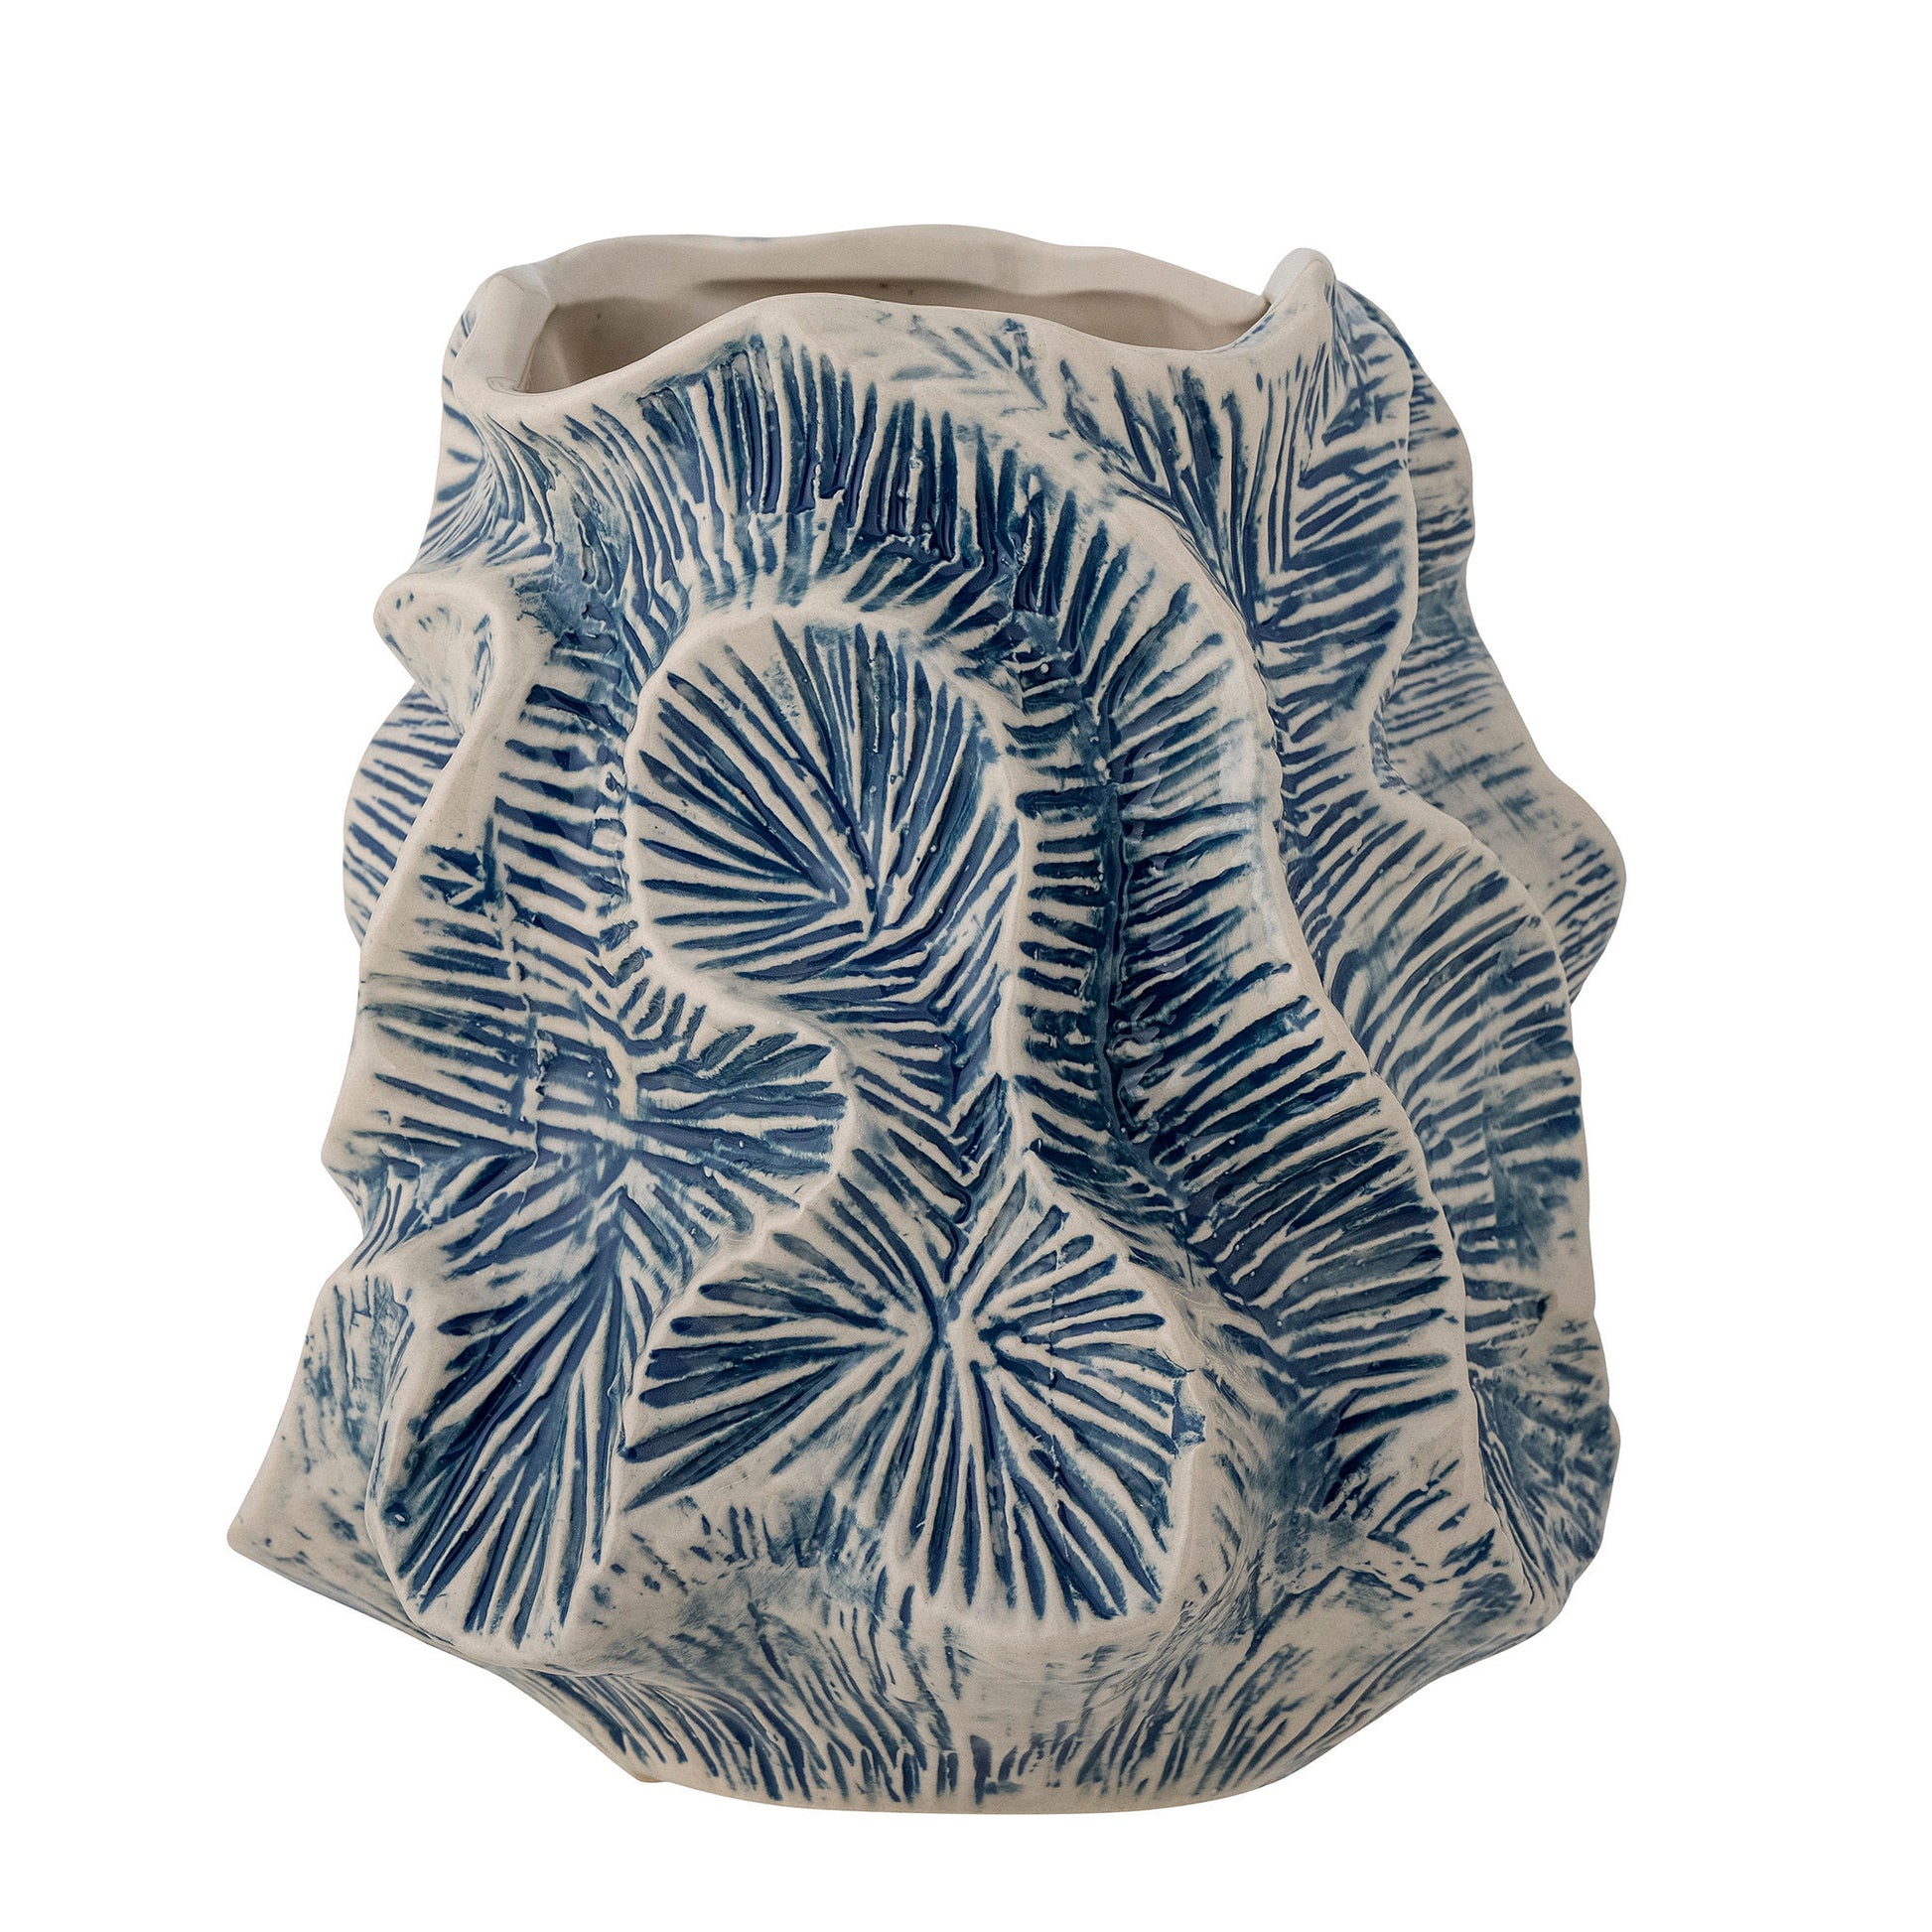 Vase en grès bleu - GUXIMaison Bloom Concept 